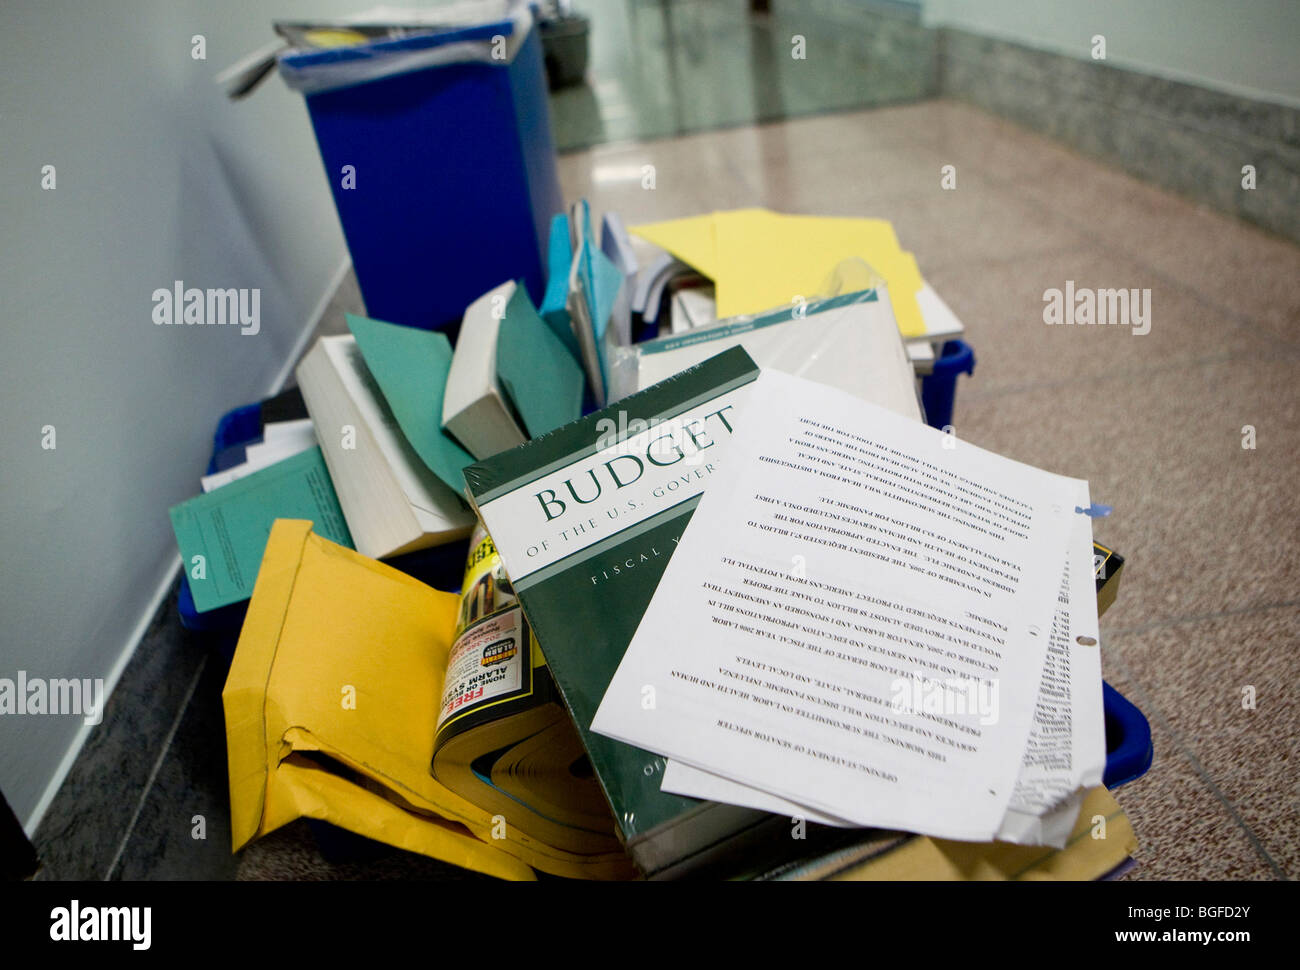 20 mai 2009 – Washington, D.C. – UNE copie abandonnée du budget fédéral encore dans son emballage est placée dans une corbeille à l'extérieur d'un bureau dans l'édifice Dirksen du Sénat. Banque D'Images